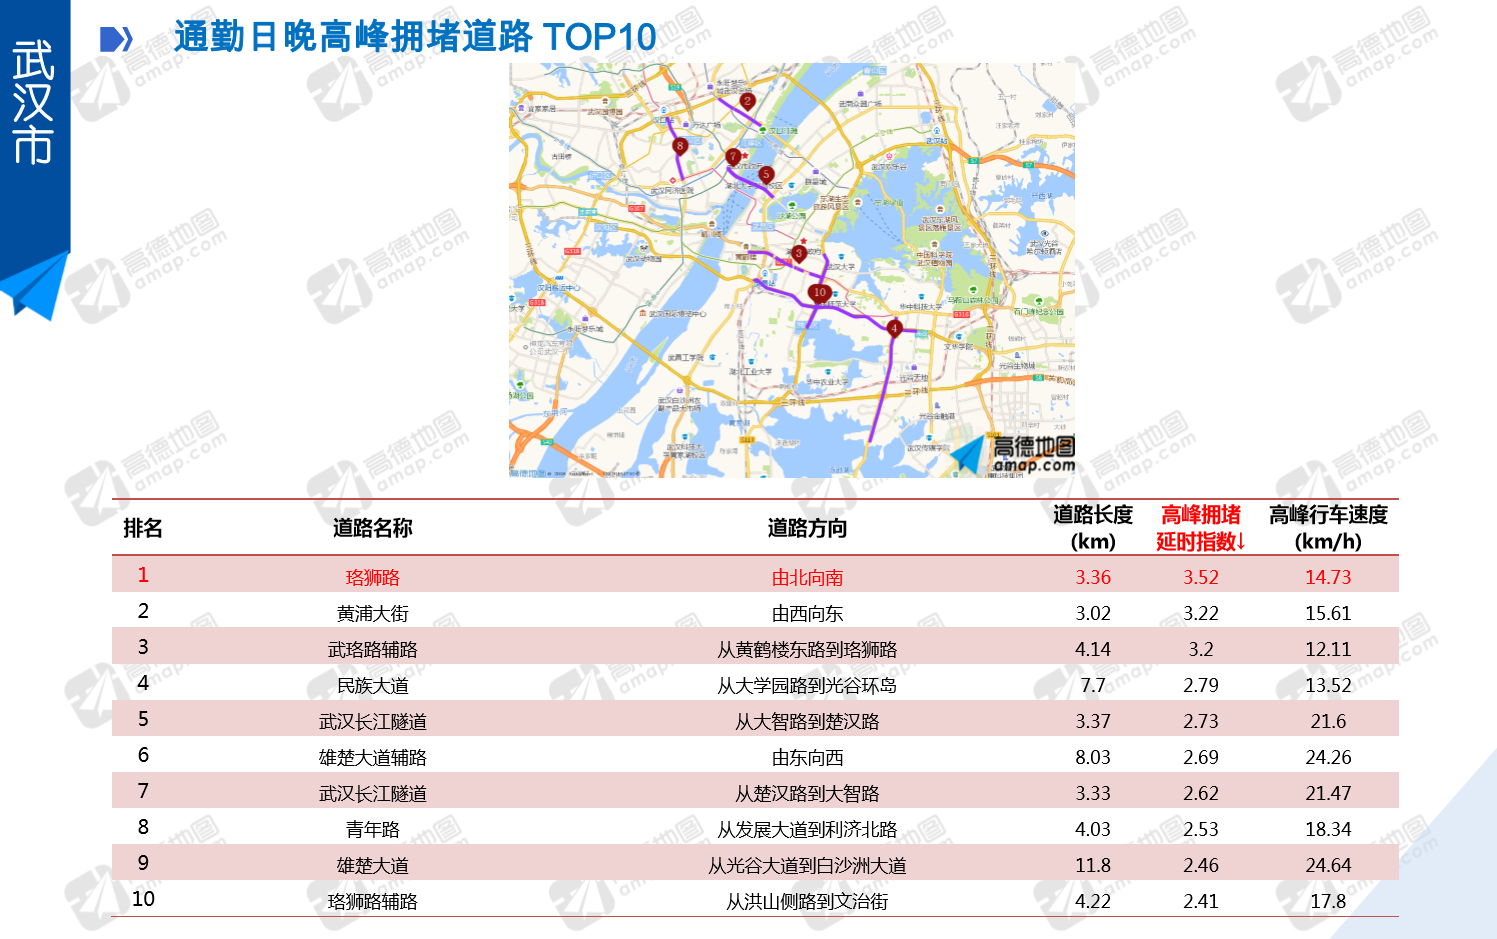 2018第二季度交通报告发布 武汉市拥堵排名第